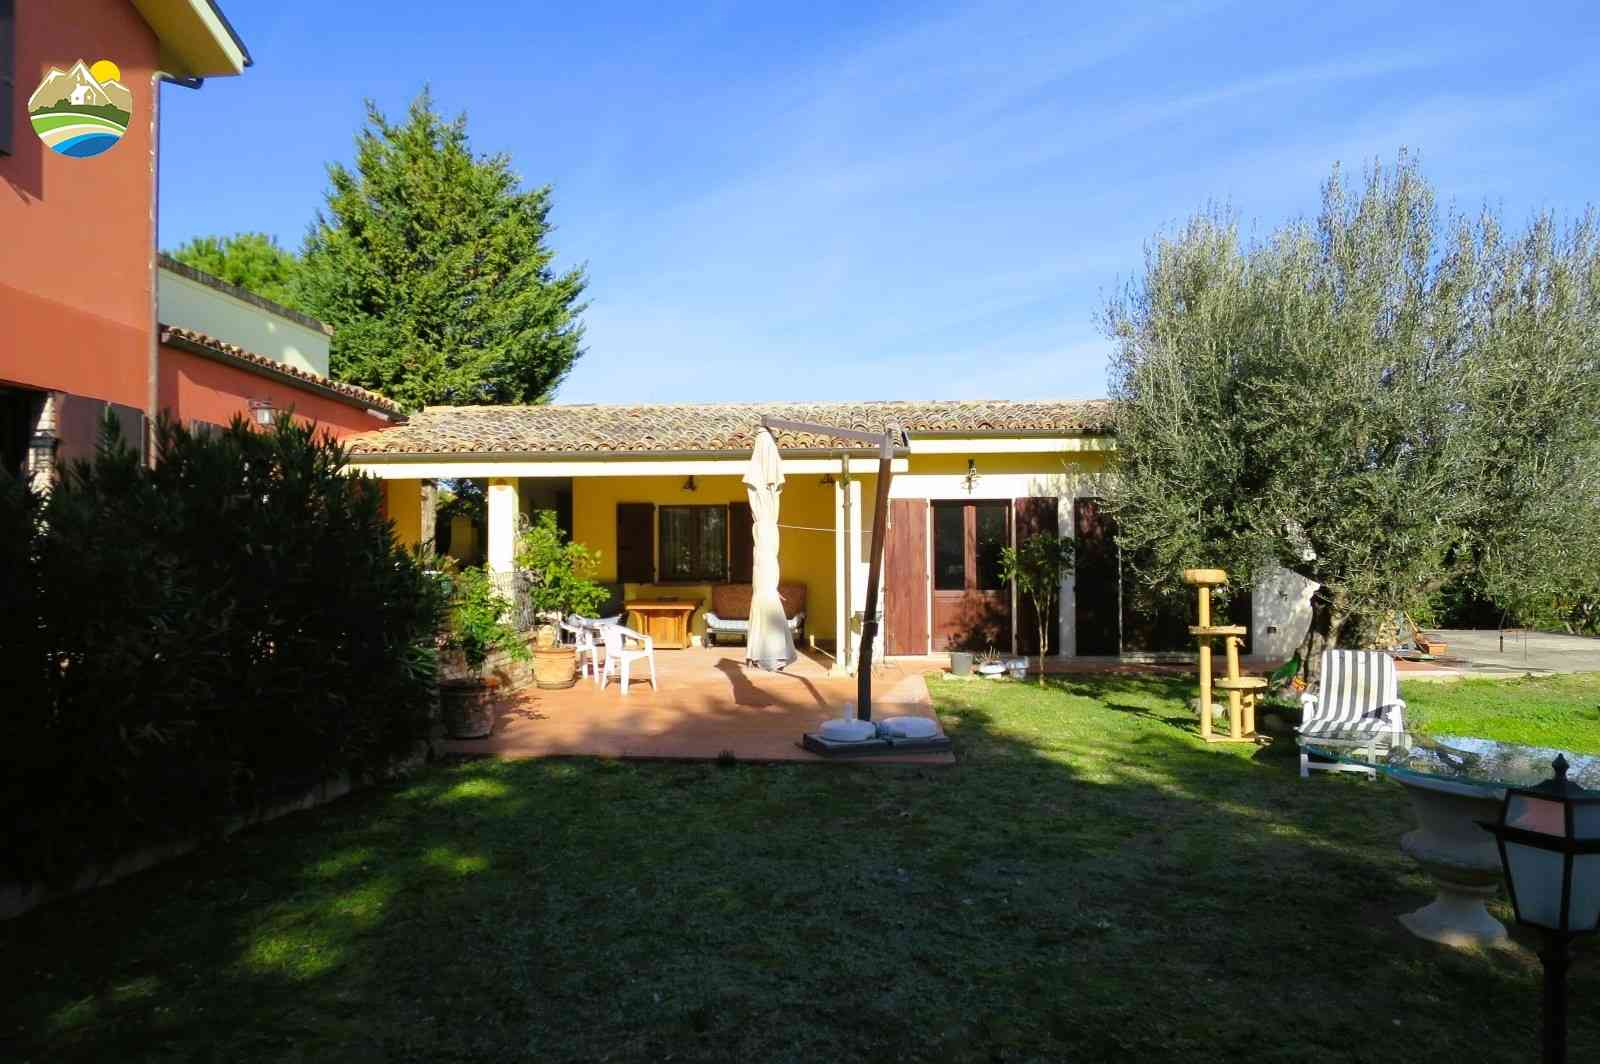 Country Houses Country Houses for sale Bellante (TE), Casale La Vignola - Bellante - EUR 524.401 640